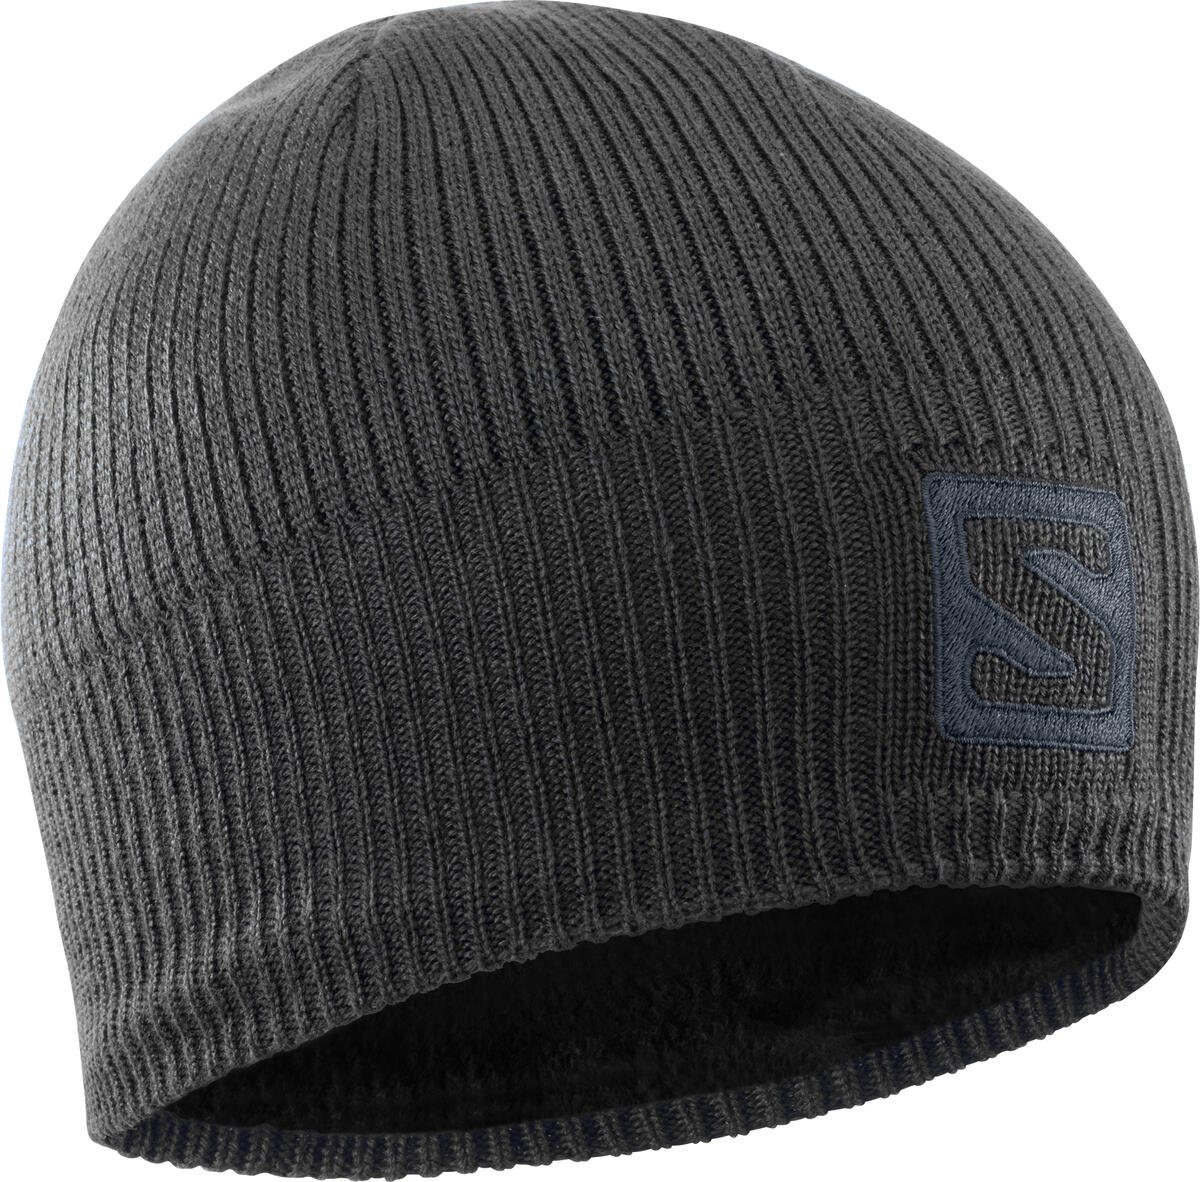 Čepice Salomon Logo Beanie - černá